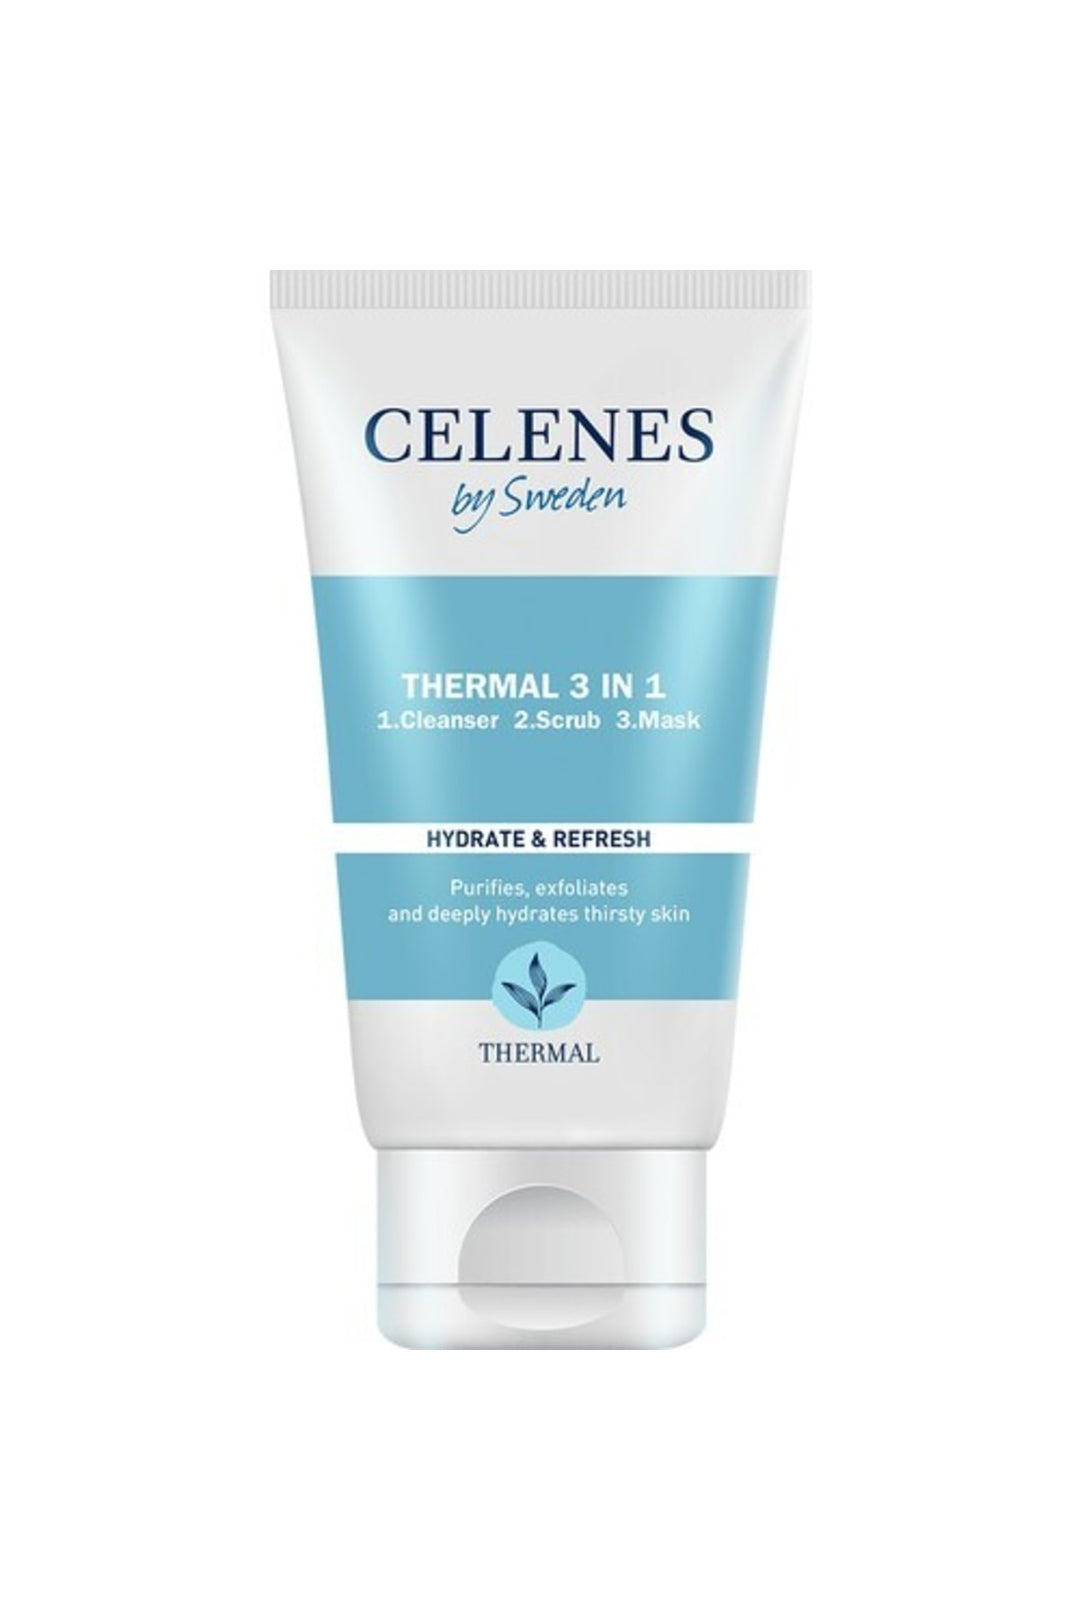 Celenes Thermal 3in1 - 150ml | سيلينس ثيرمال 3 في 1 - 150 مل